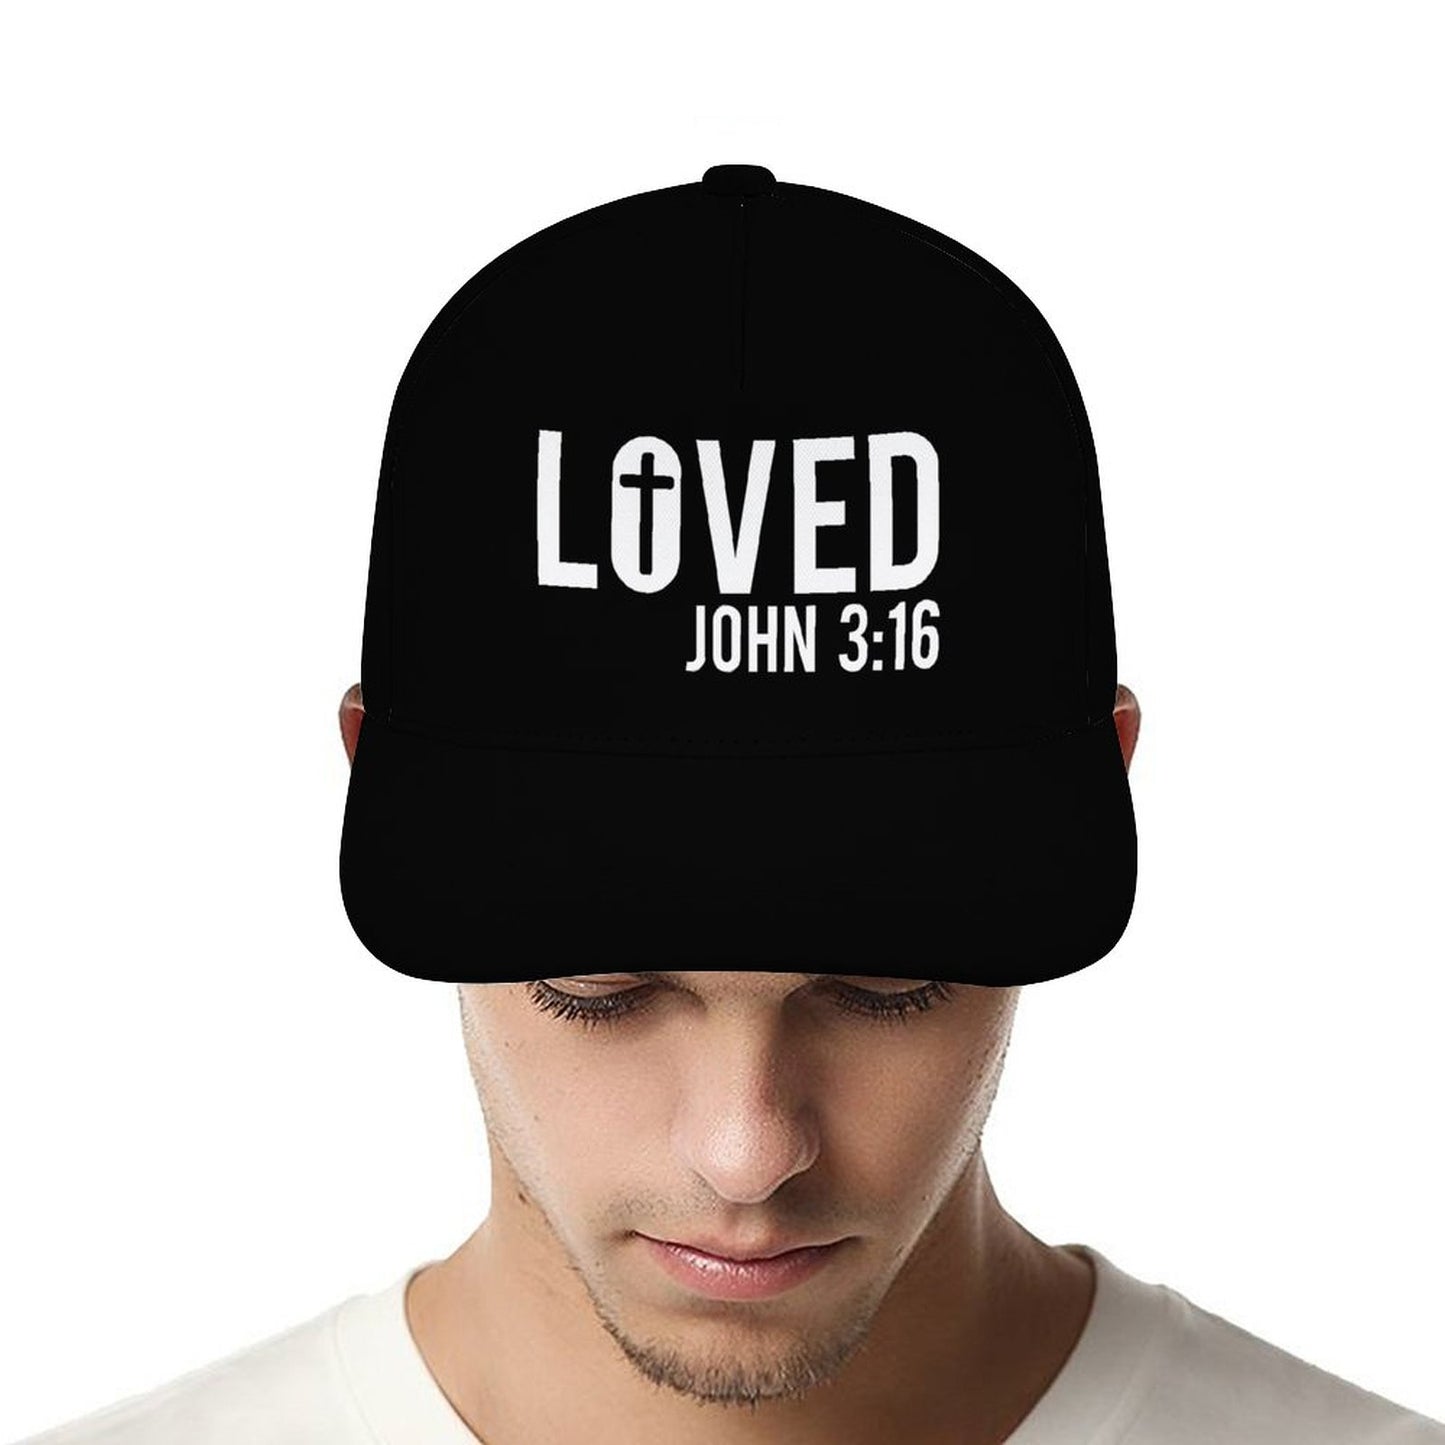 John 3:16 Loved Christian Hat